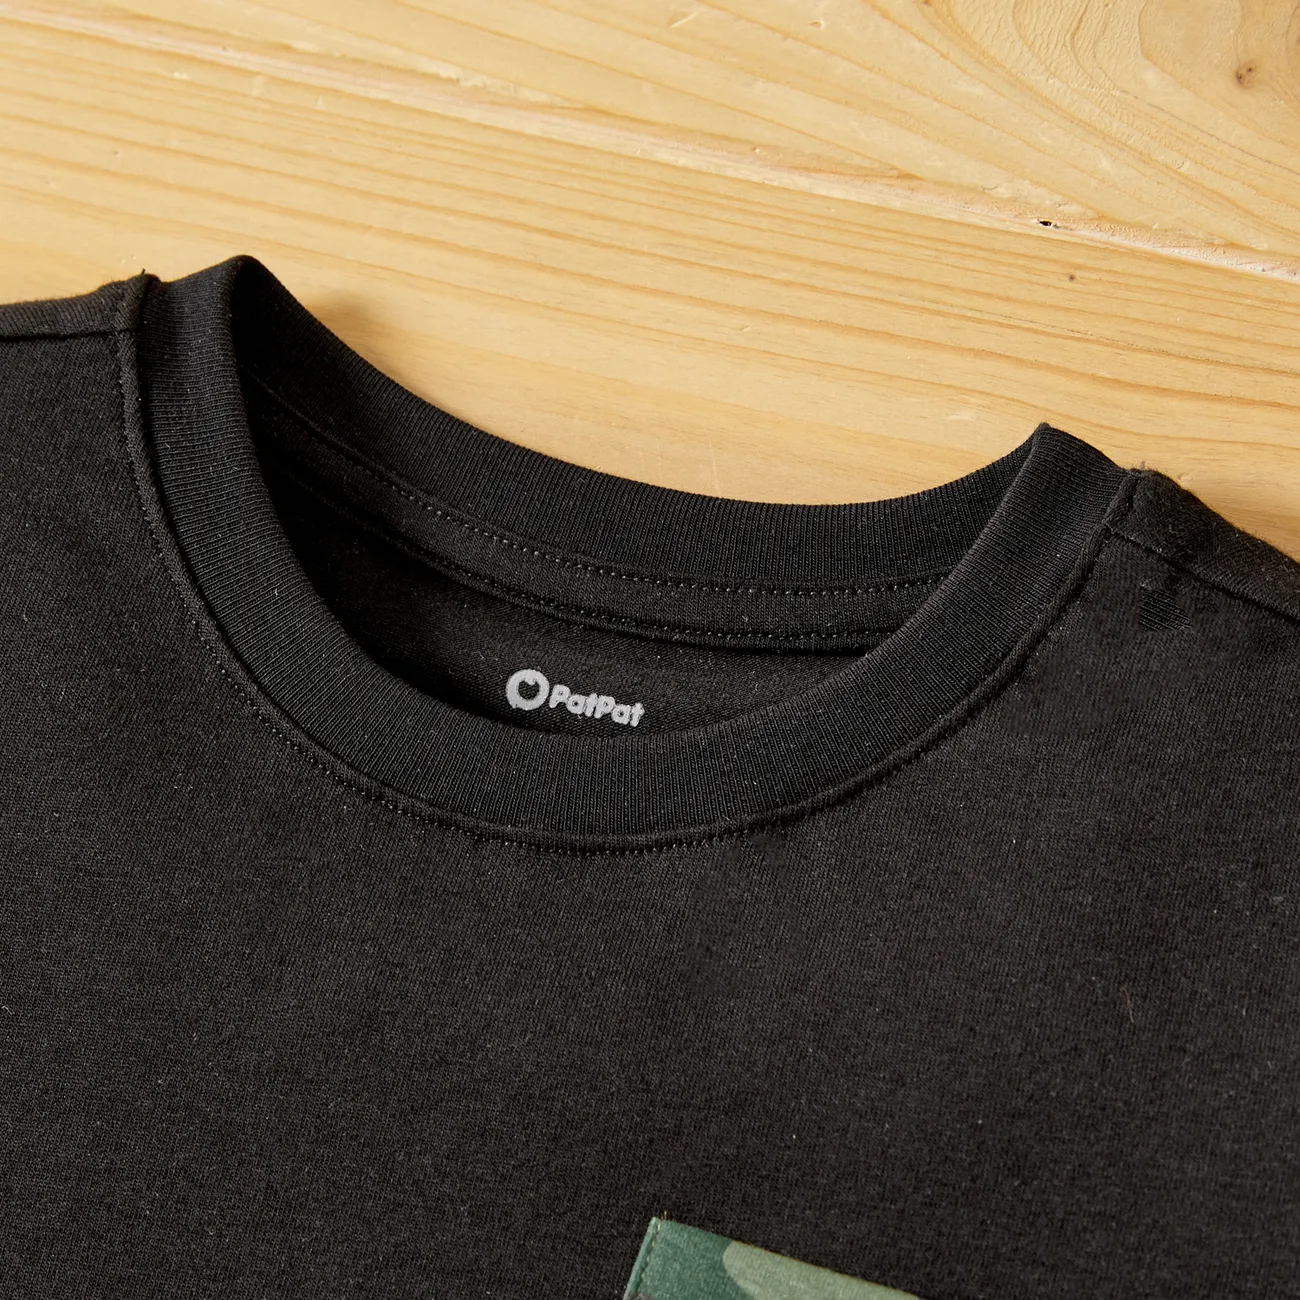 Conjunto de 2 piezas de camiseta de manga corta con diseño de bolsillo para niños pequeños y pantalones cortos con estampado de camuflaje Negro big image 1